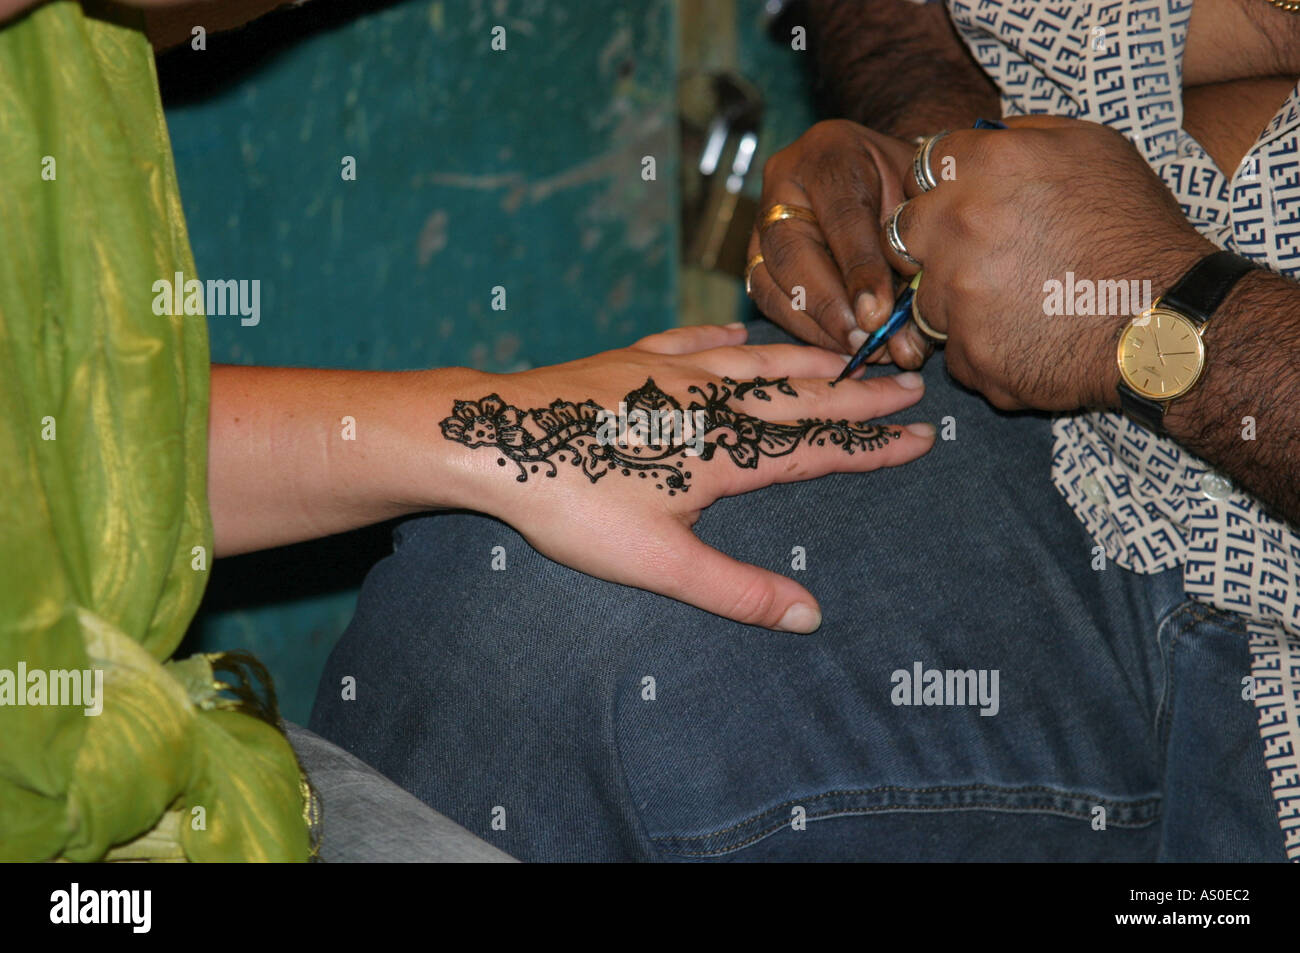 Tatouage au henné Kuala Lumpur Malaisie Asie Jamek Mastid traditionnels exotiques orientaux motif tatouages peinture décoration corps main m Banque D'Images